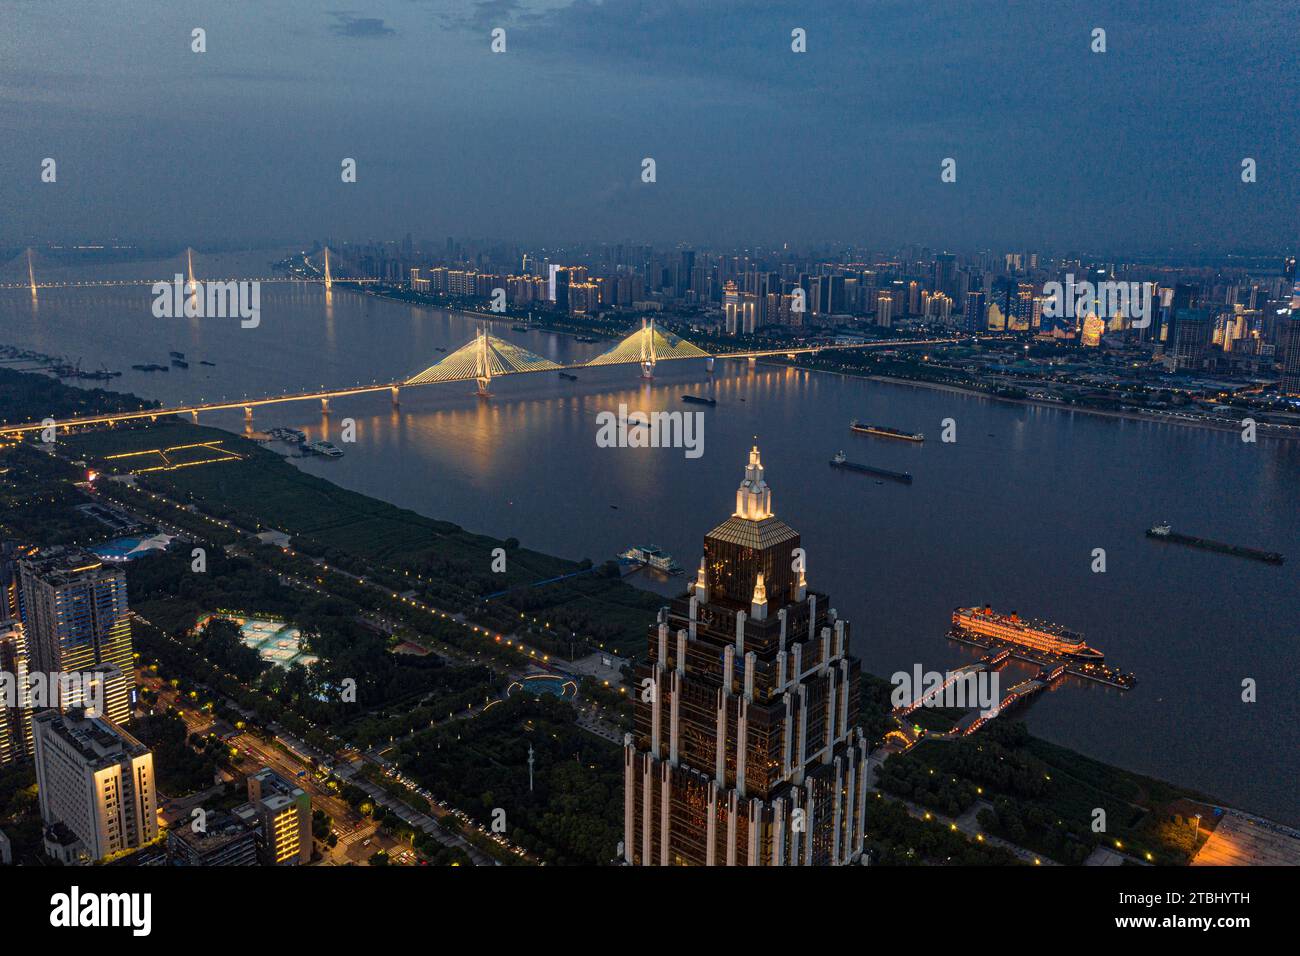 Ein atemberaubender Blick aus der Luft auf den Yangtze River, Wuhan erleuchtete mit Lichtern und Wolkenkratzer auf beiden Seiten begannen zu leuchten Stockfoto